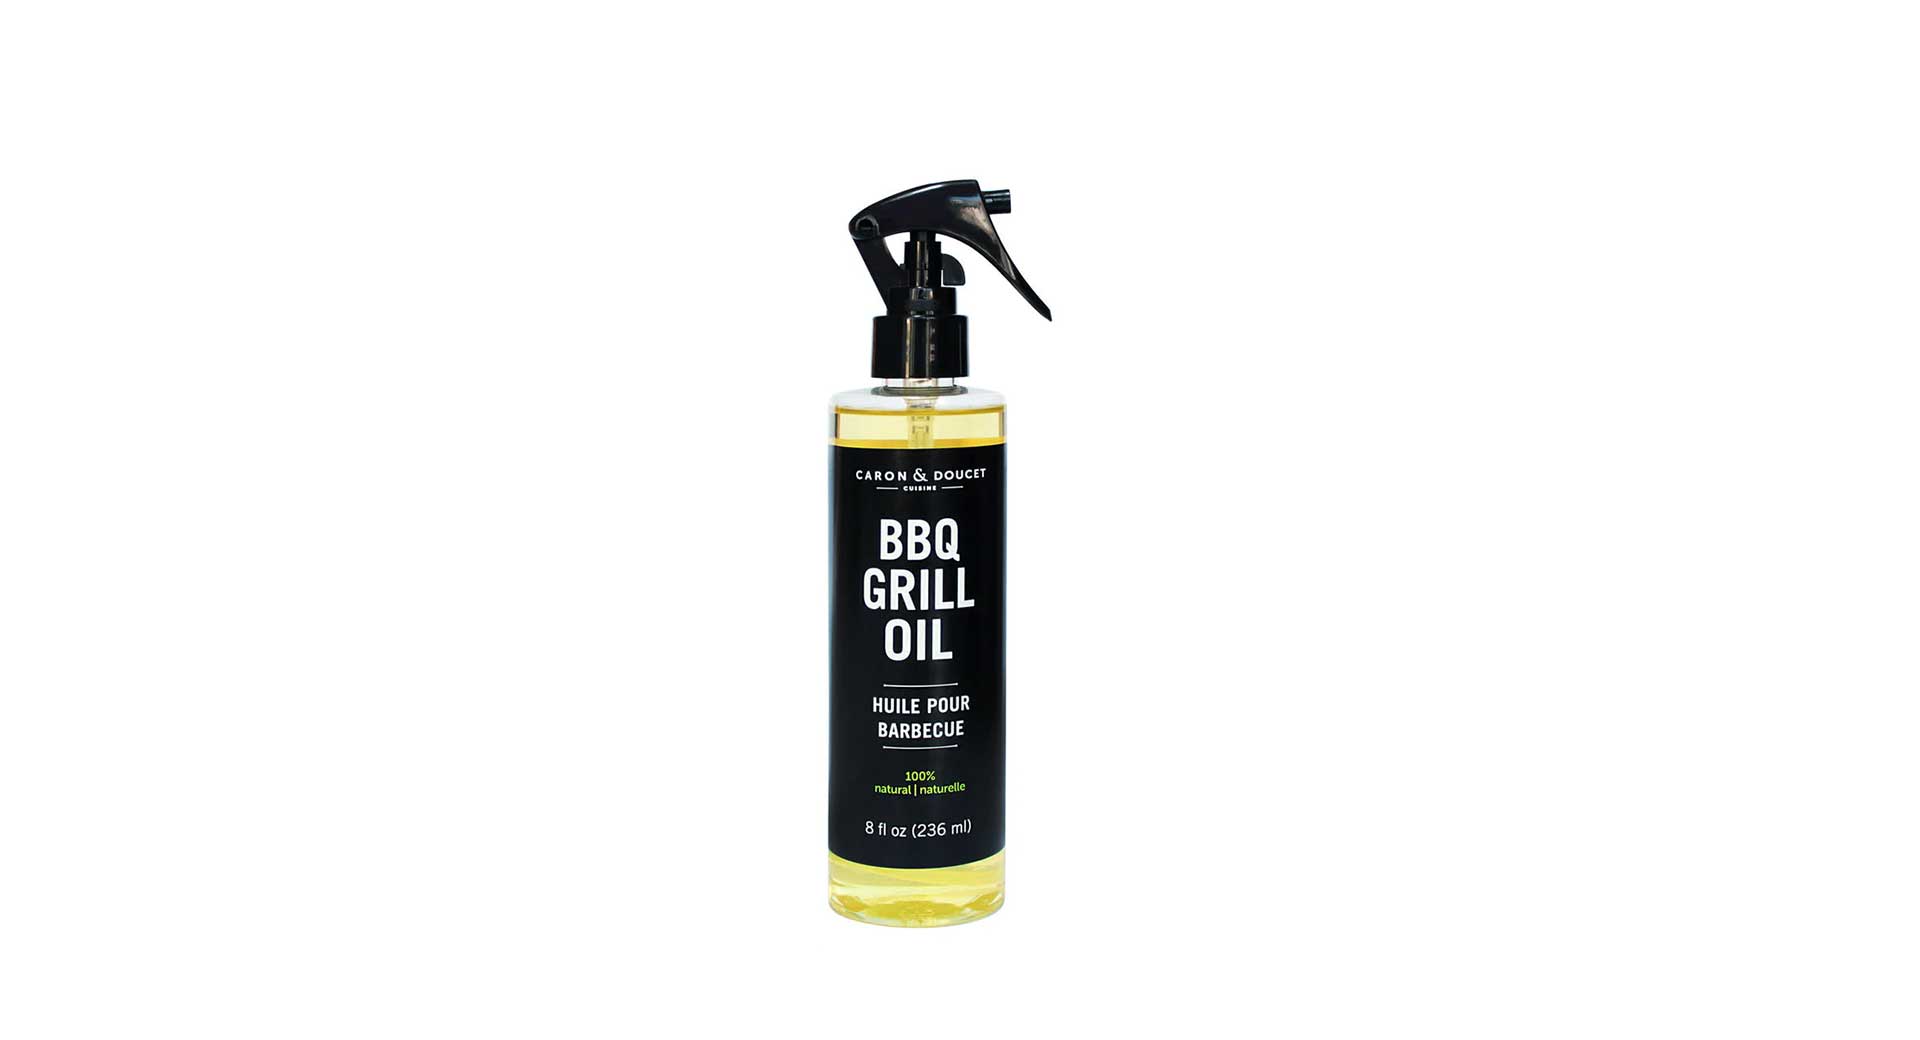 BBQ grill oil